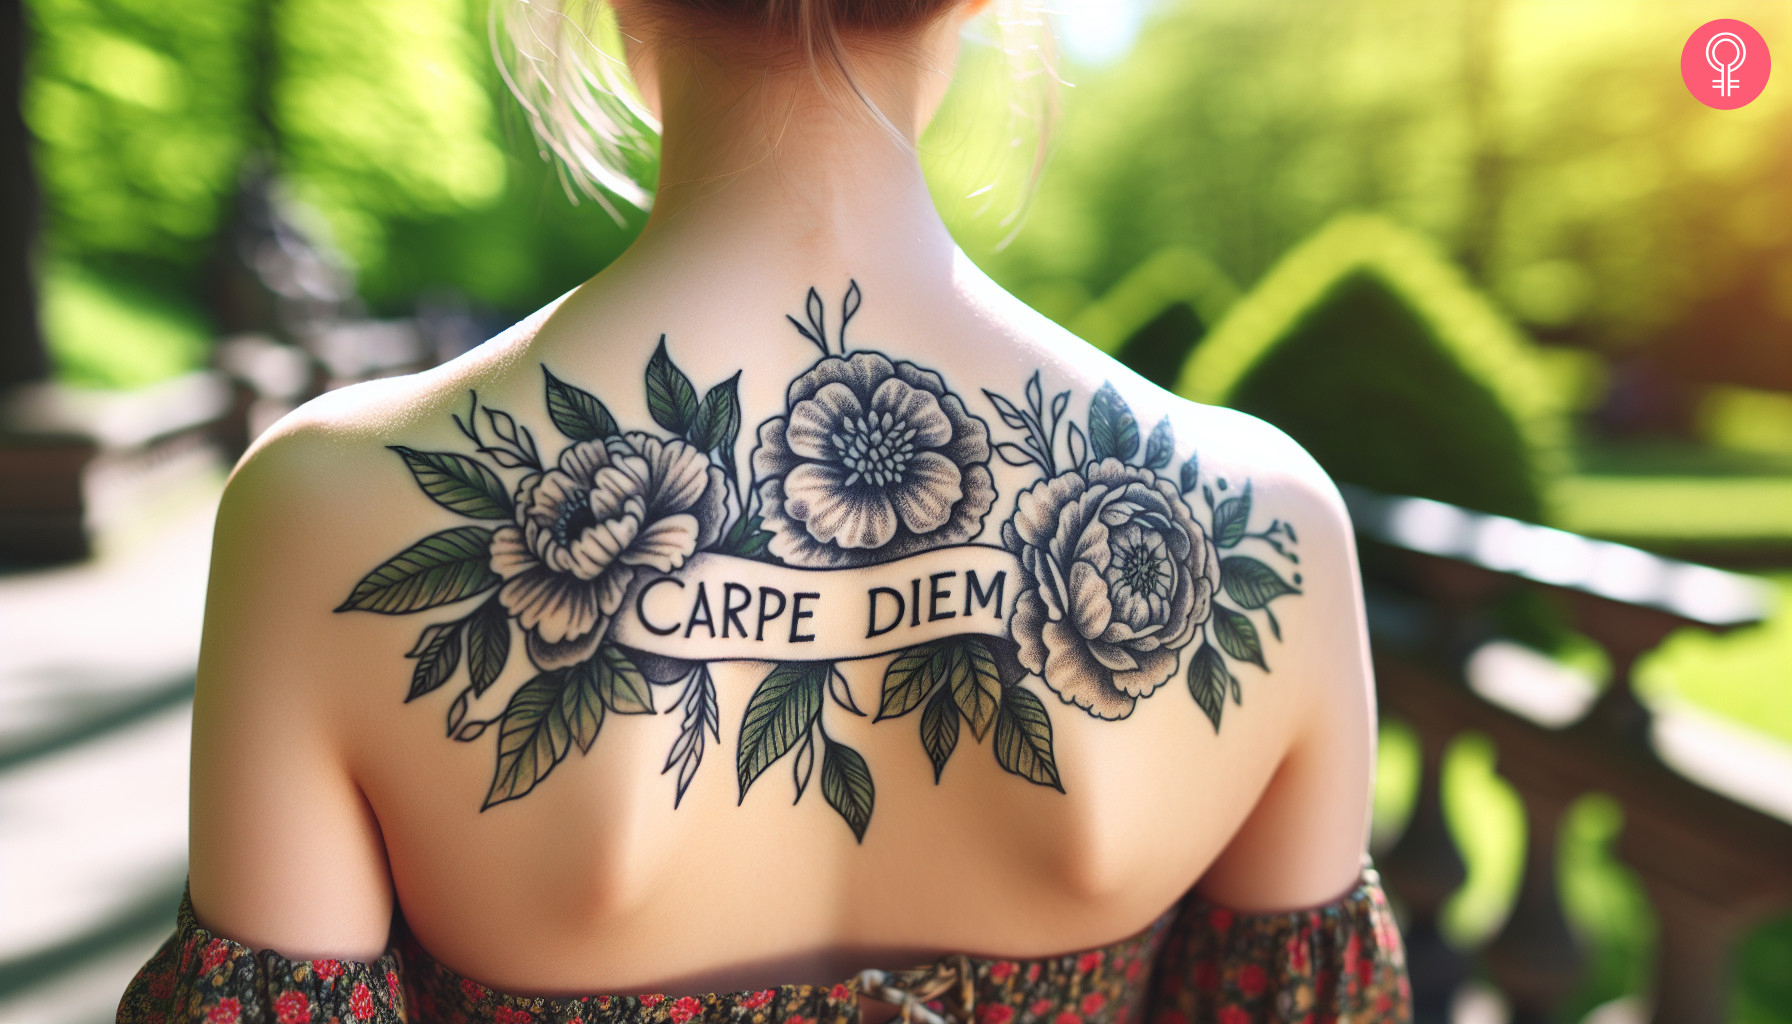 Carpe diem tattoo on a woman’s back